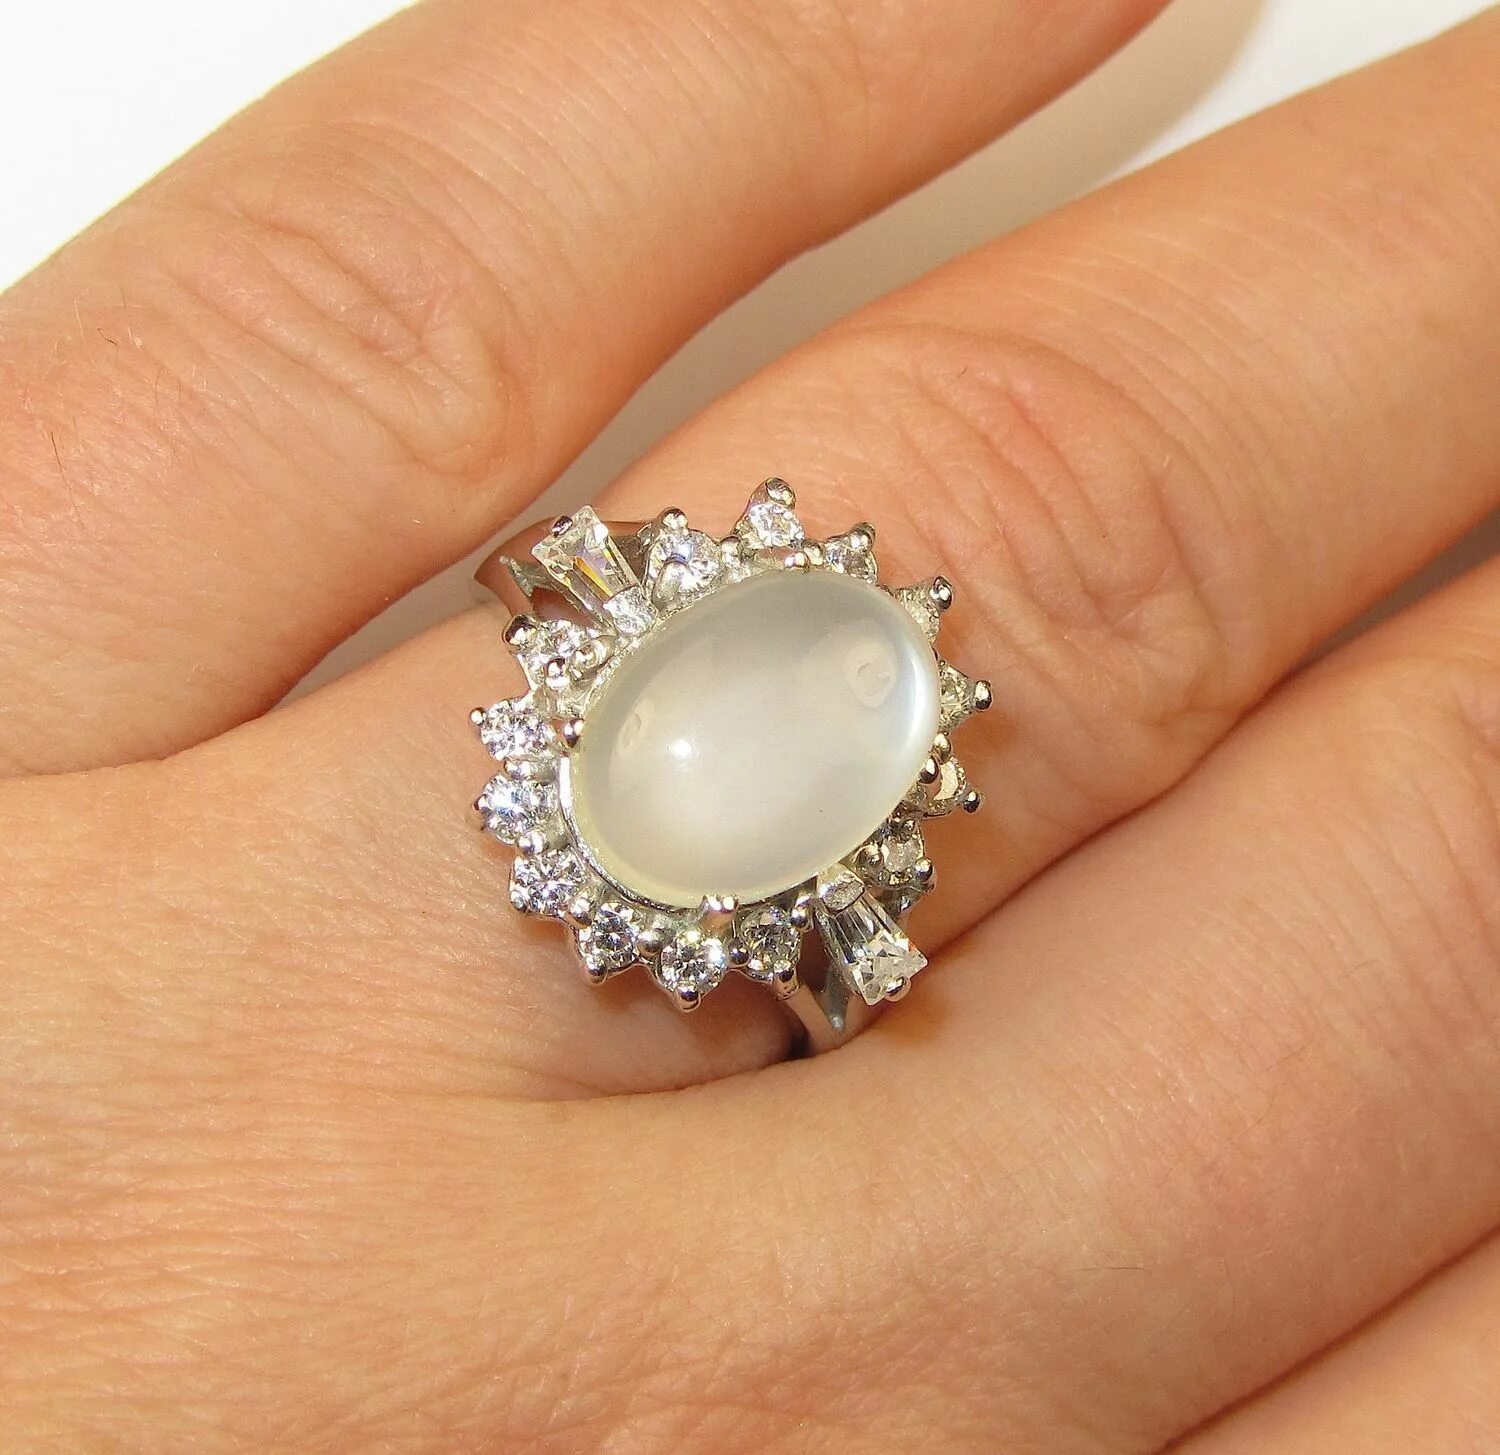 Купить женские кольца камнями. Кольцо с длинным камнем. Кольцо с камнем серебро. Золотое кольцо с лунным камнем. Серебряное кольцо с крупным камнем.